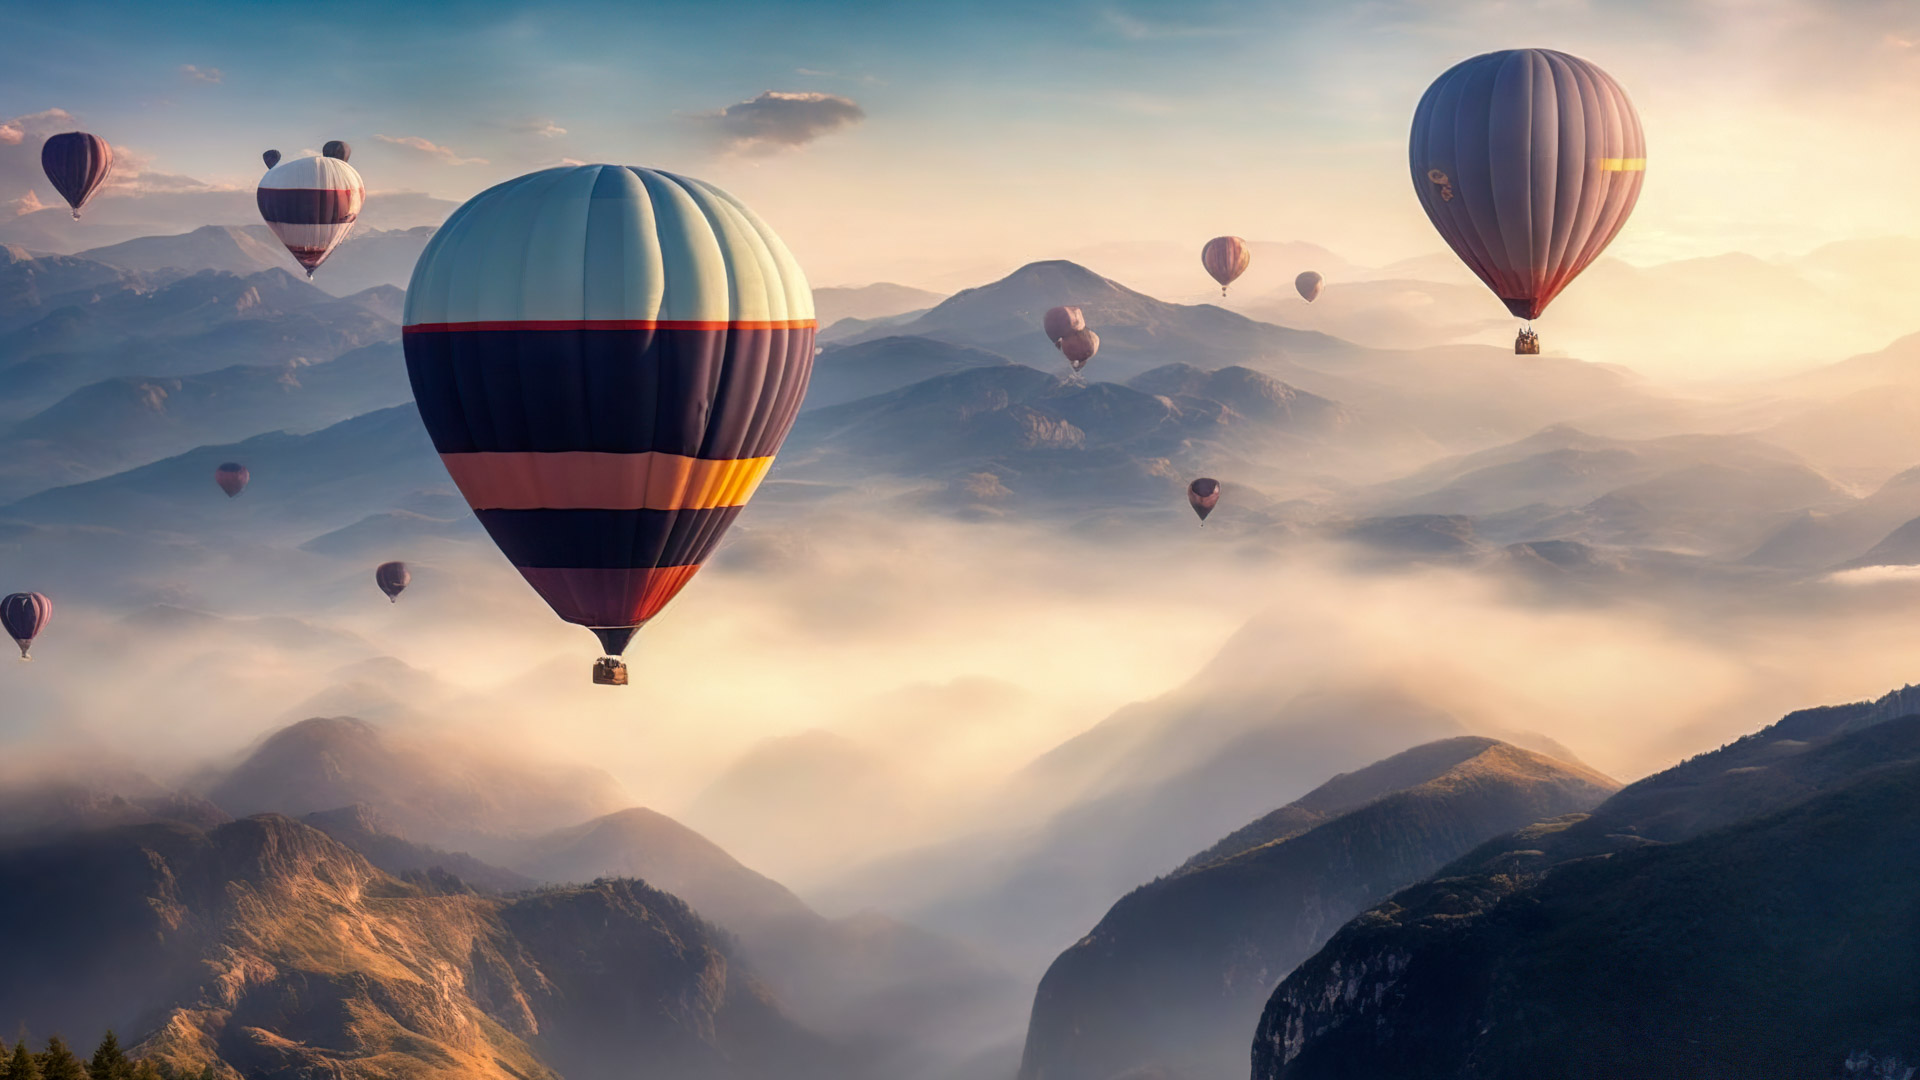 Vivez le surréalisme avec notre fond d'écran de montagne, présentant un ciel rempli de montgolfières flottant paisiblement au-dessus d'un paysage montagneux brumeux.